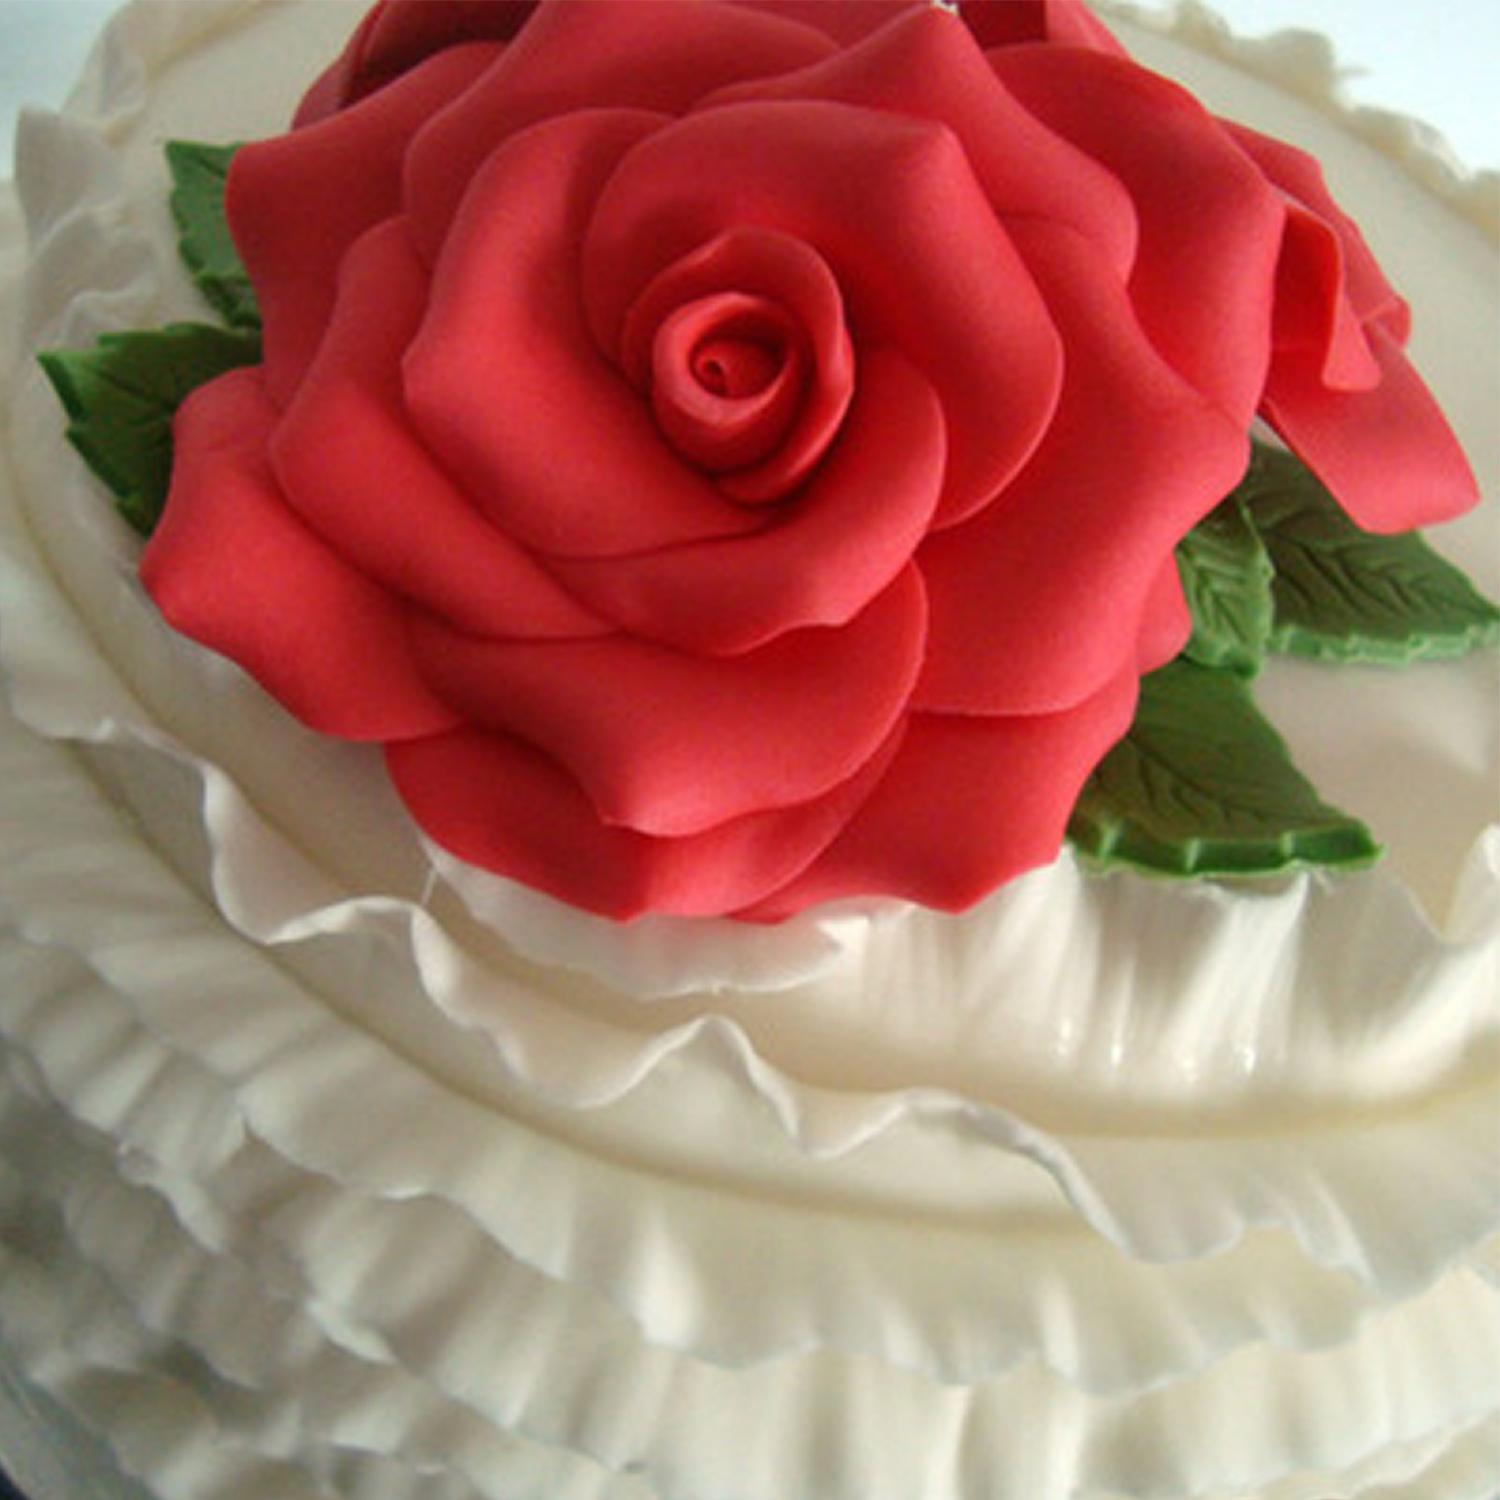 SUPER CAKES BIG ROSE FLOWER RED